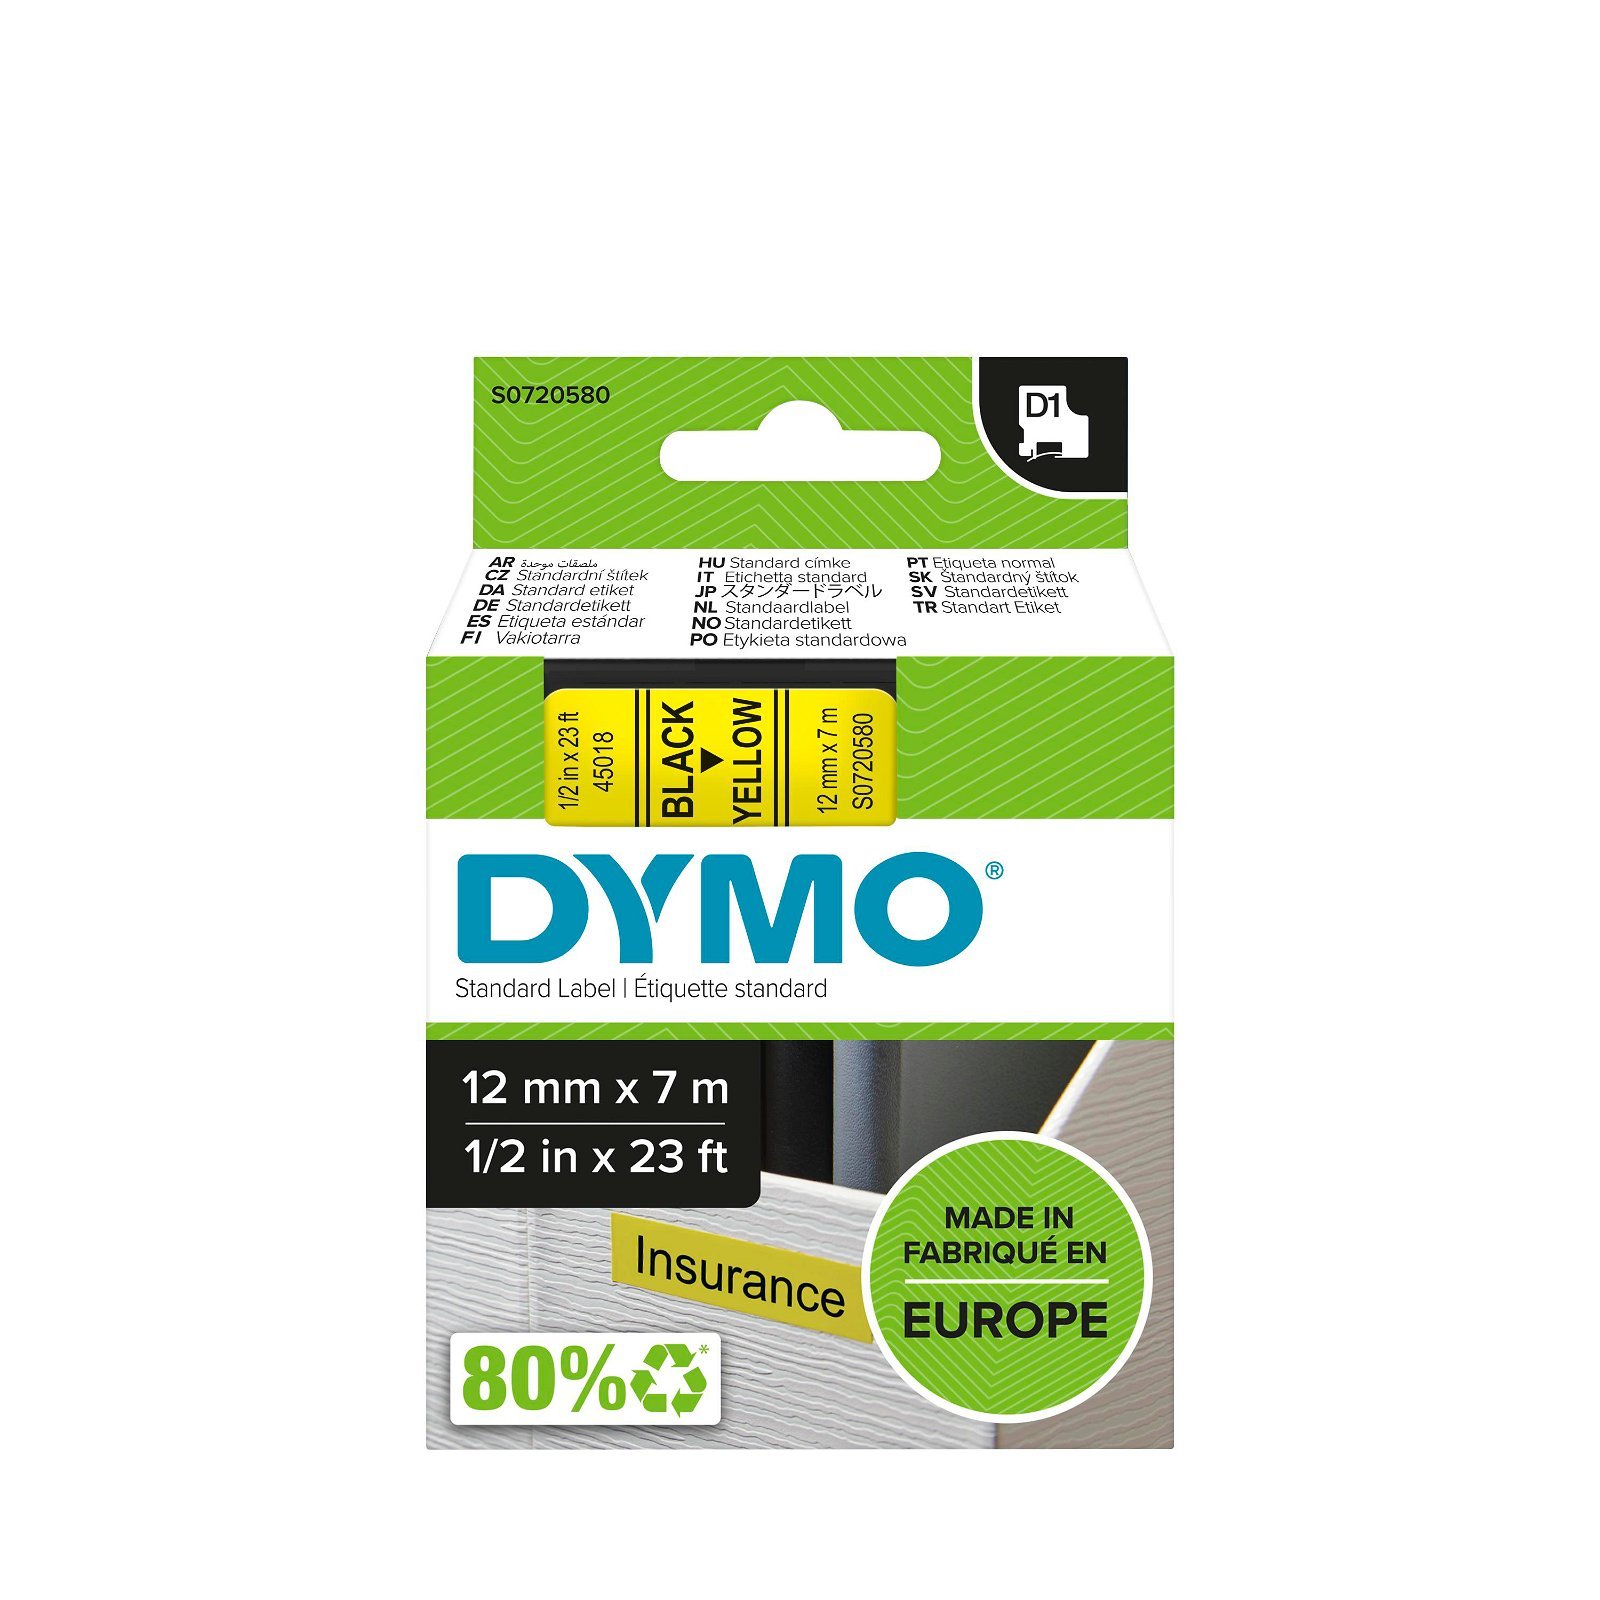 Dymo D1 standard tapekasette 12 mm sort;gul Polyester